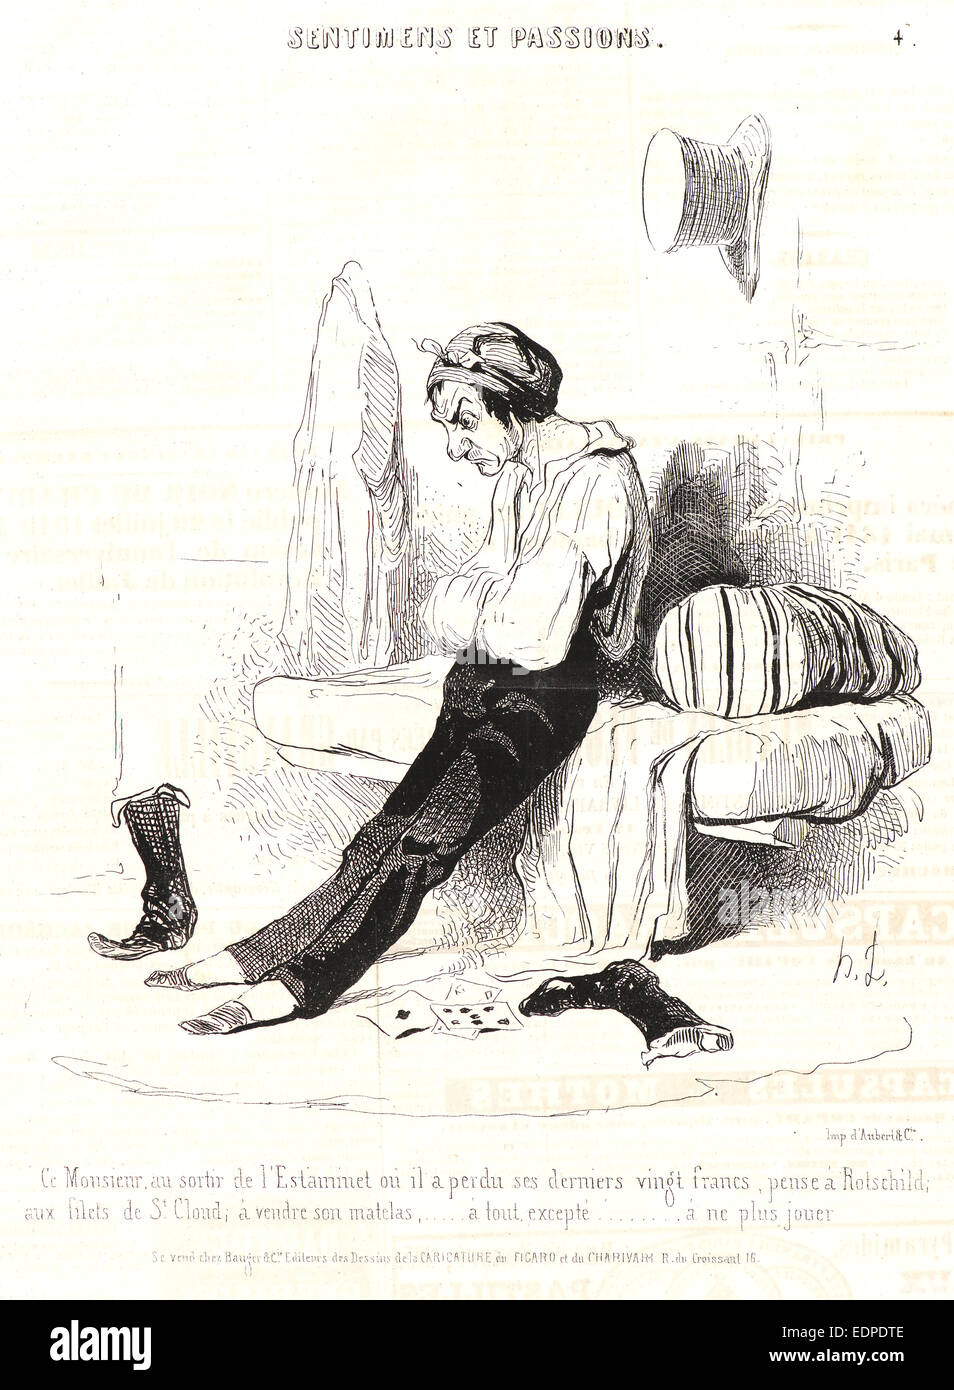 Honoré Daumier (French, 1808 - 1879). Ce Monsieur, au sortir de l'Estaminet..., 1841. From Sentimens et Passions Stock Photo